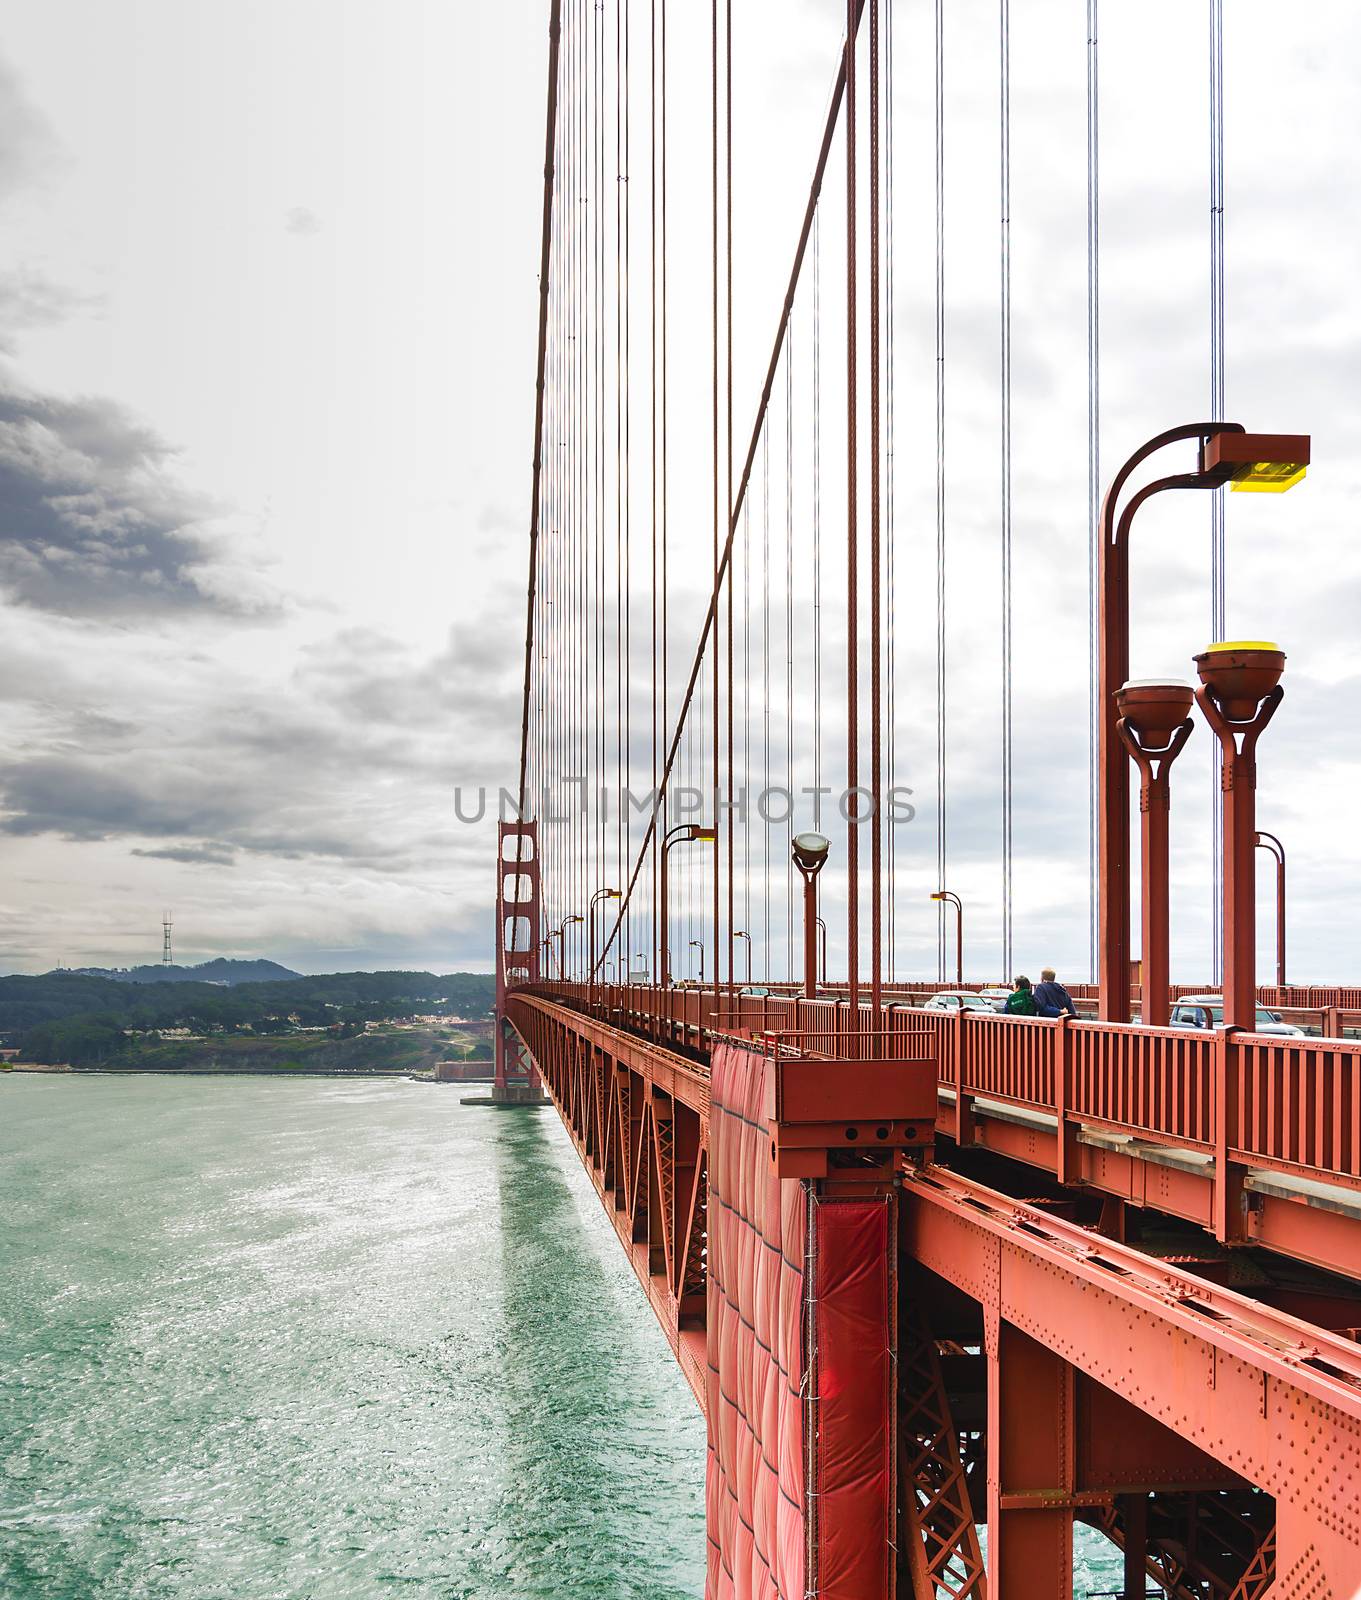 Golden Gate suspension bridge by rarrarorro